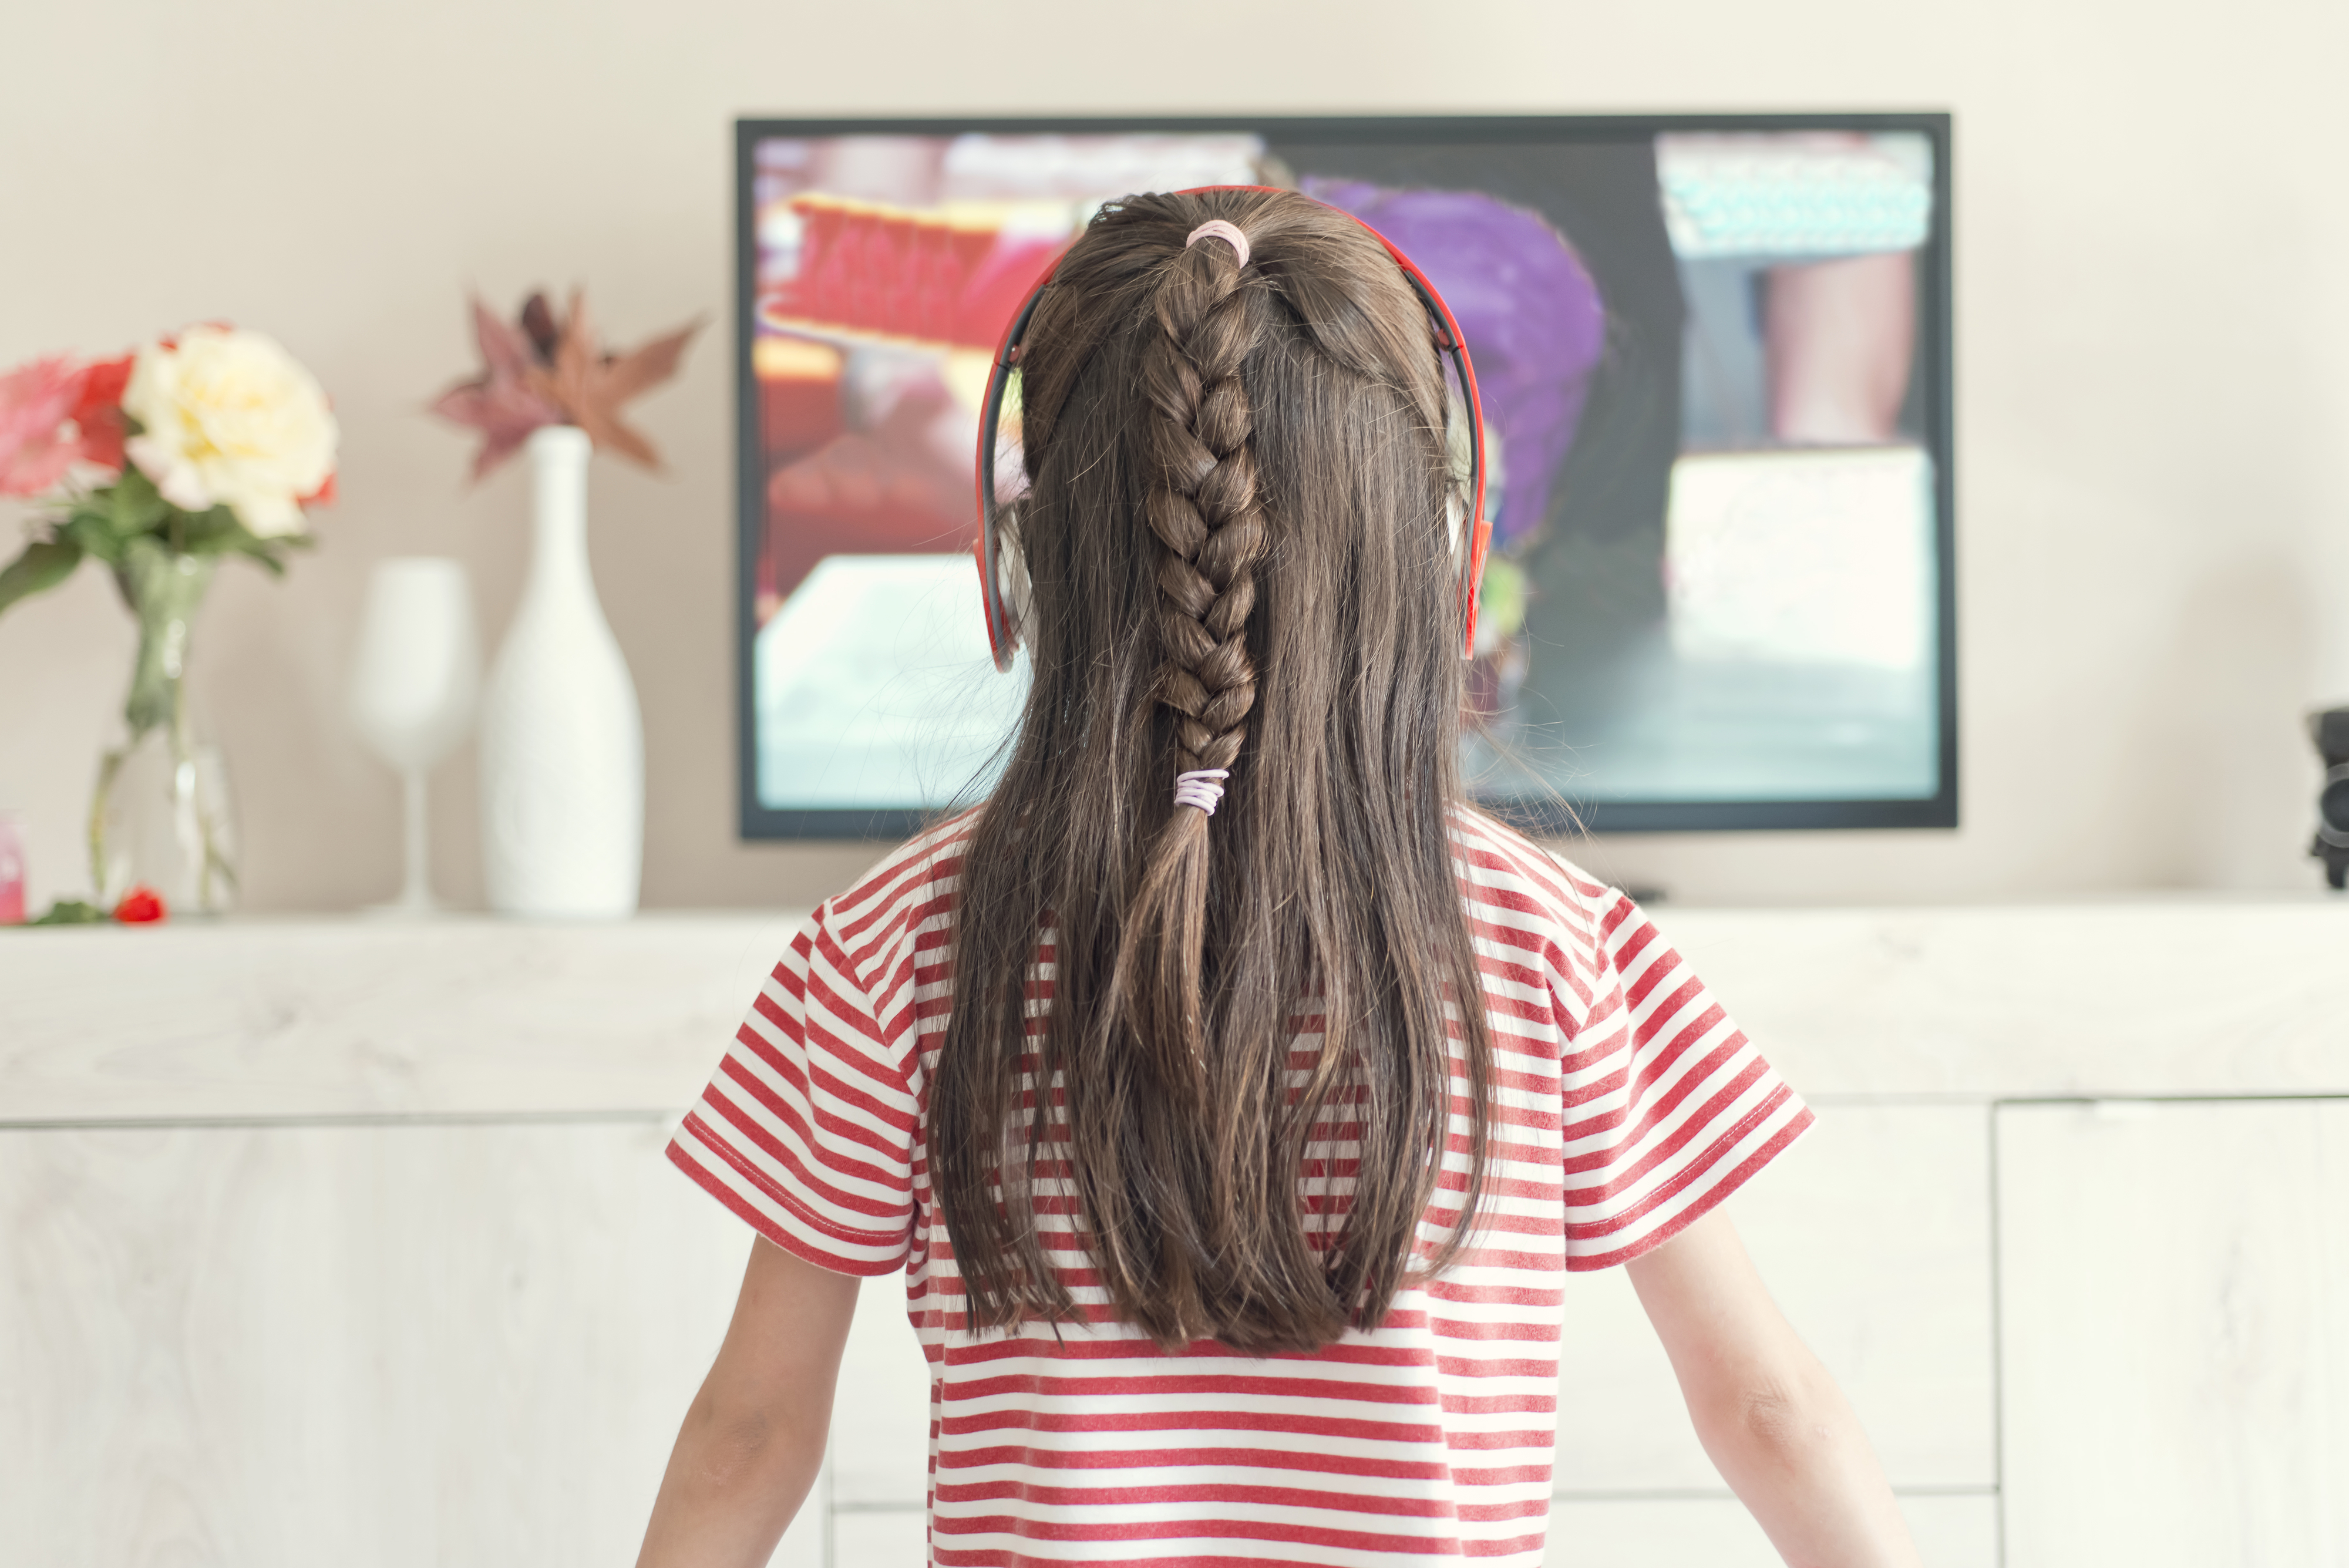 A little girl watching TV